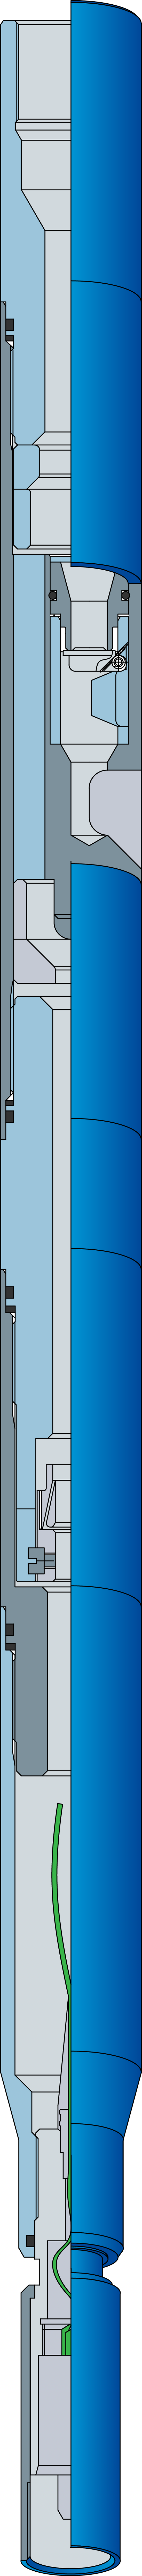 Соединитель геофизический комбинированный с клапаном типа СГКК